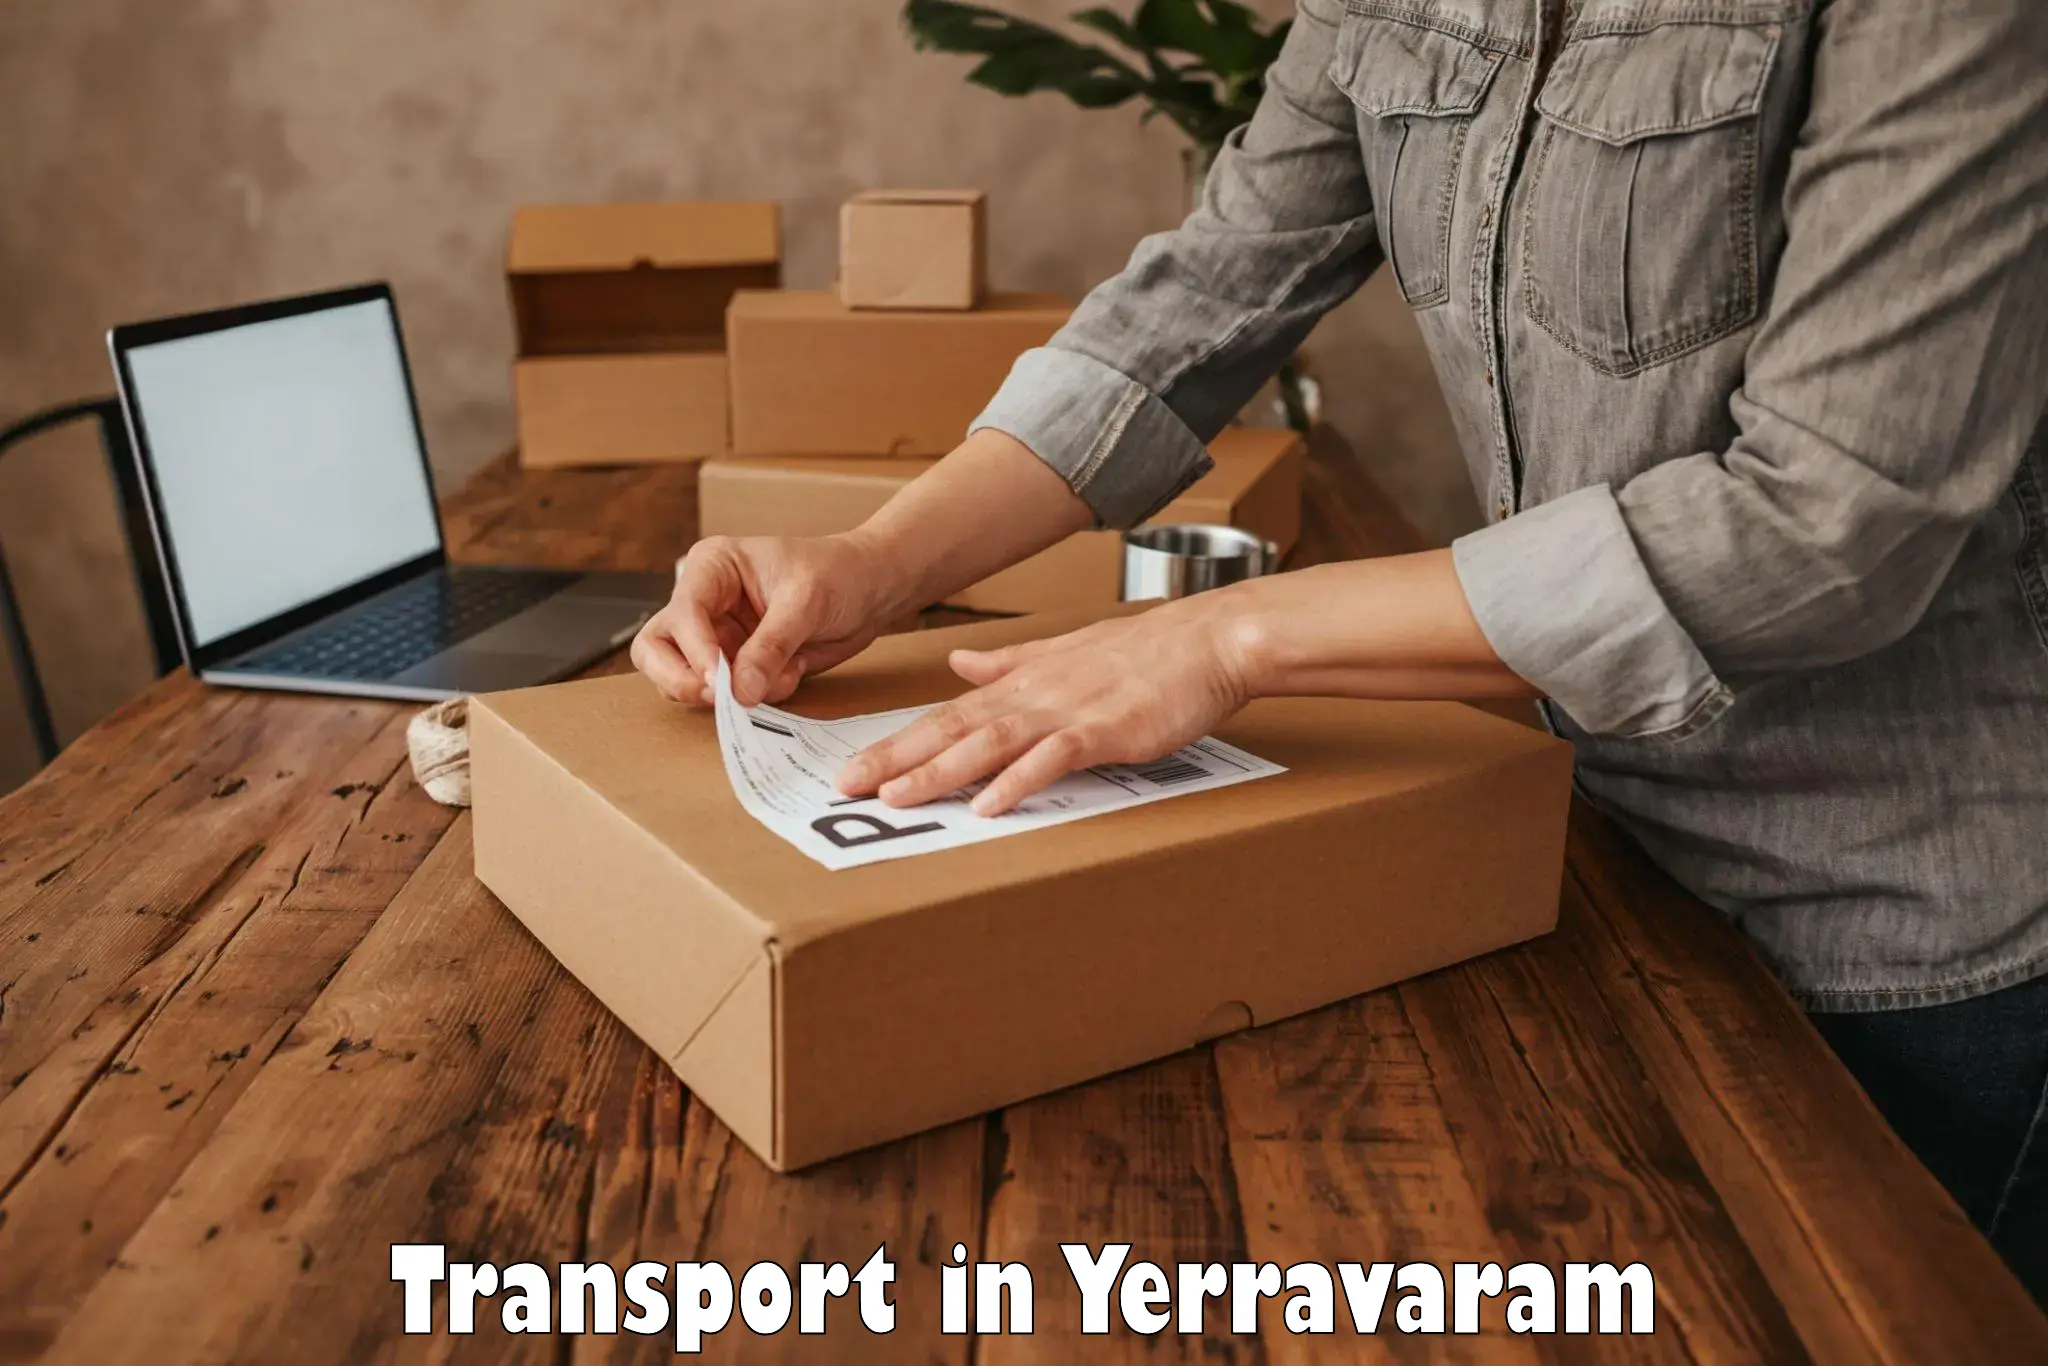 Truck transport companies in India in Yerravaram